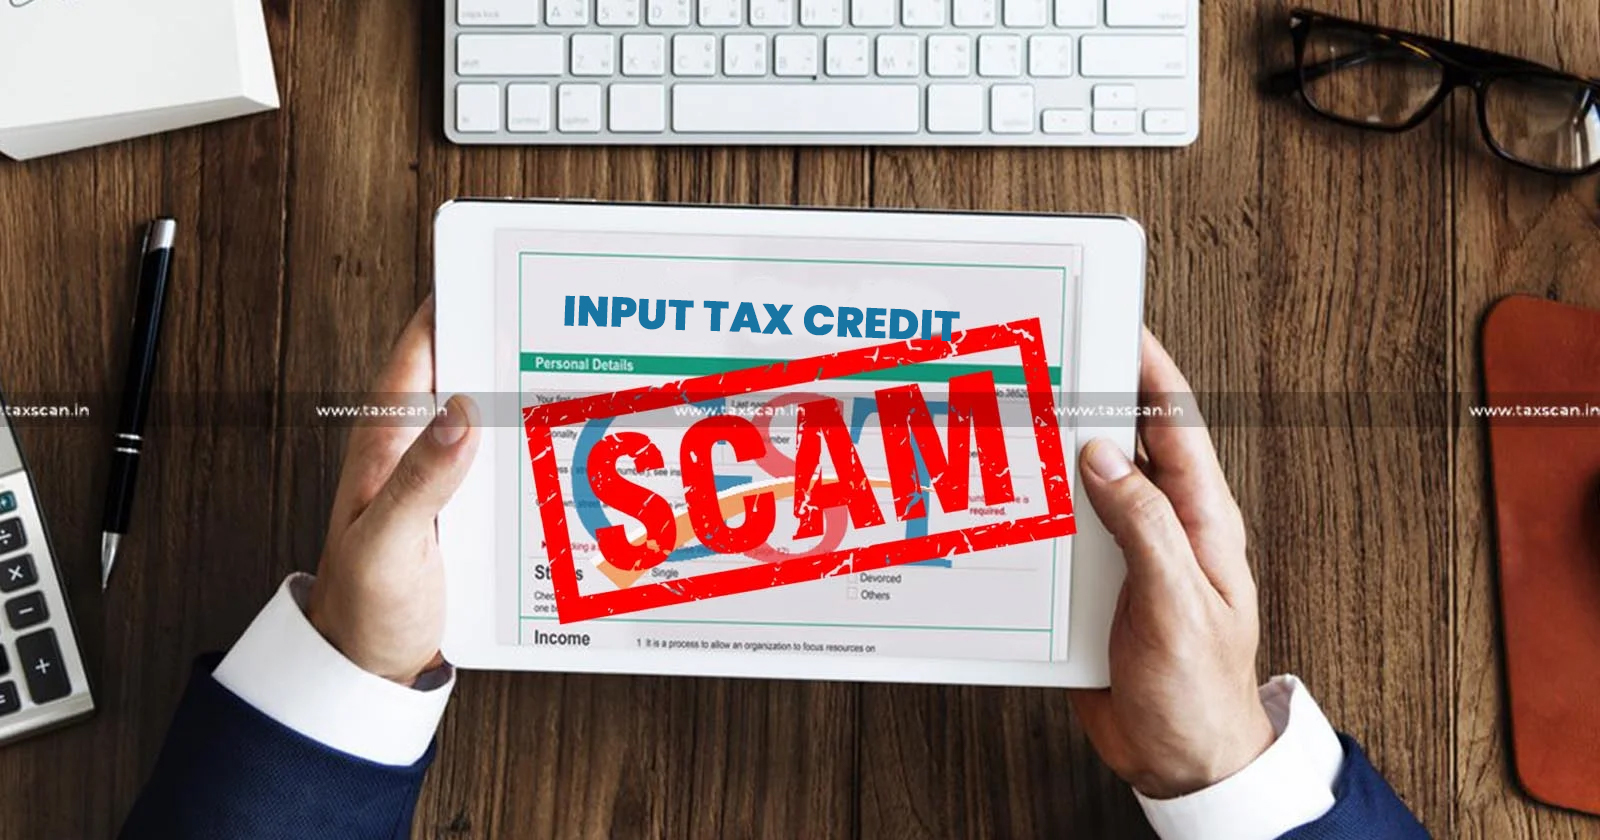 Tax Authorities Exposes ₹64 Crore ITC Scam - Authorities Exposes ₹64 Crore ITC Scam - ITC Scam Tied to Scrap Dealers - Scam Tied to Scrap Dealers - TAXSCAN